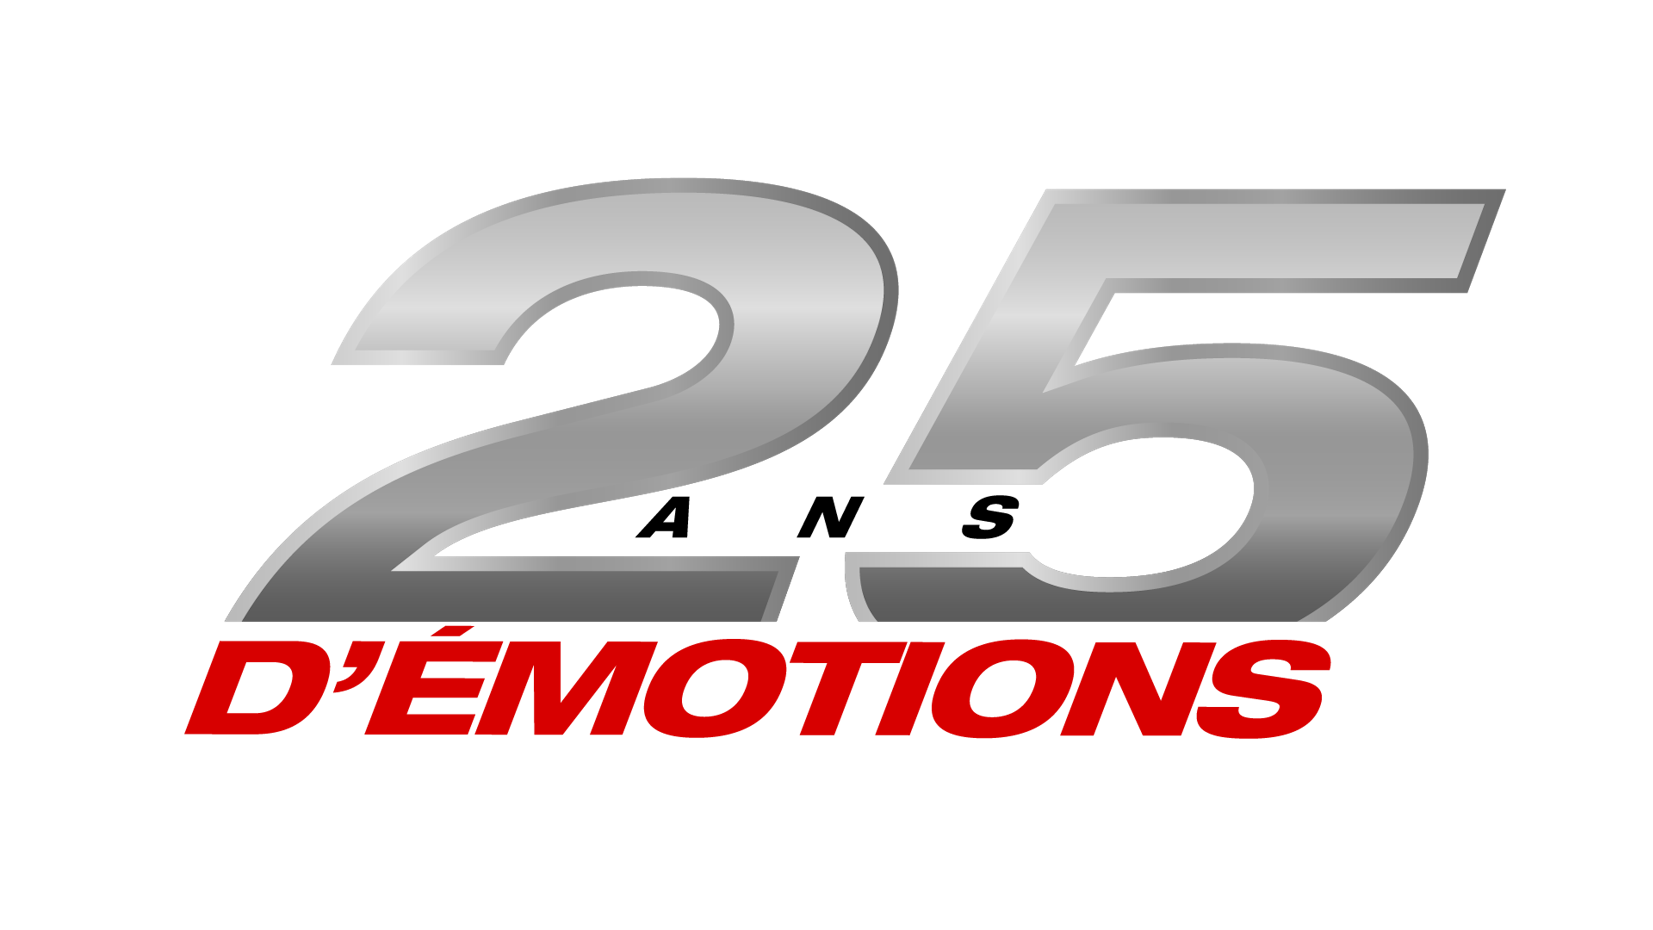 25 Ans D Emotions Bell Media